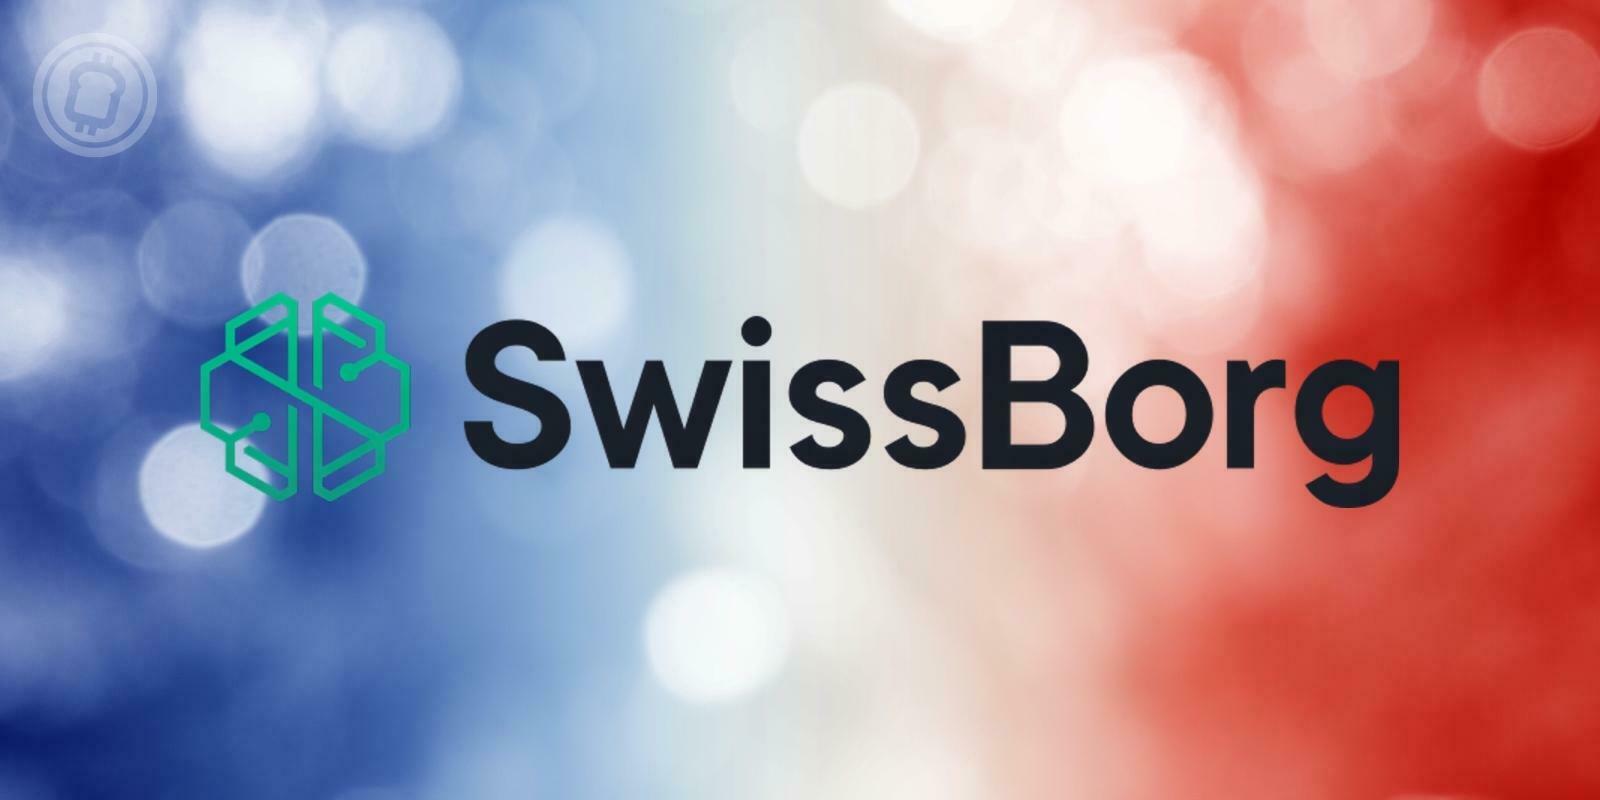 SwissBorg (CHSB) obtient son enregistrement PSAN auprès de l’AMF